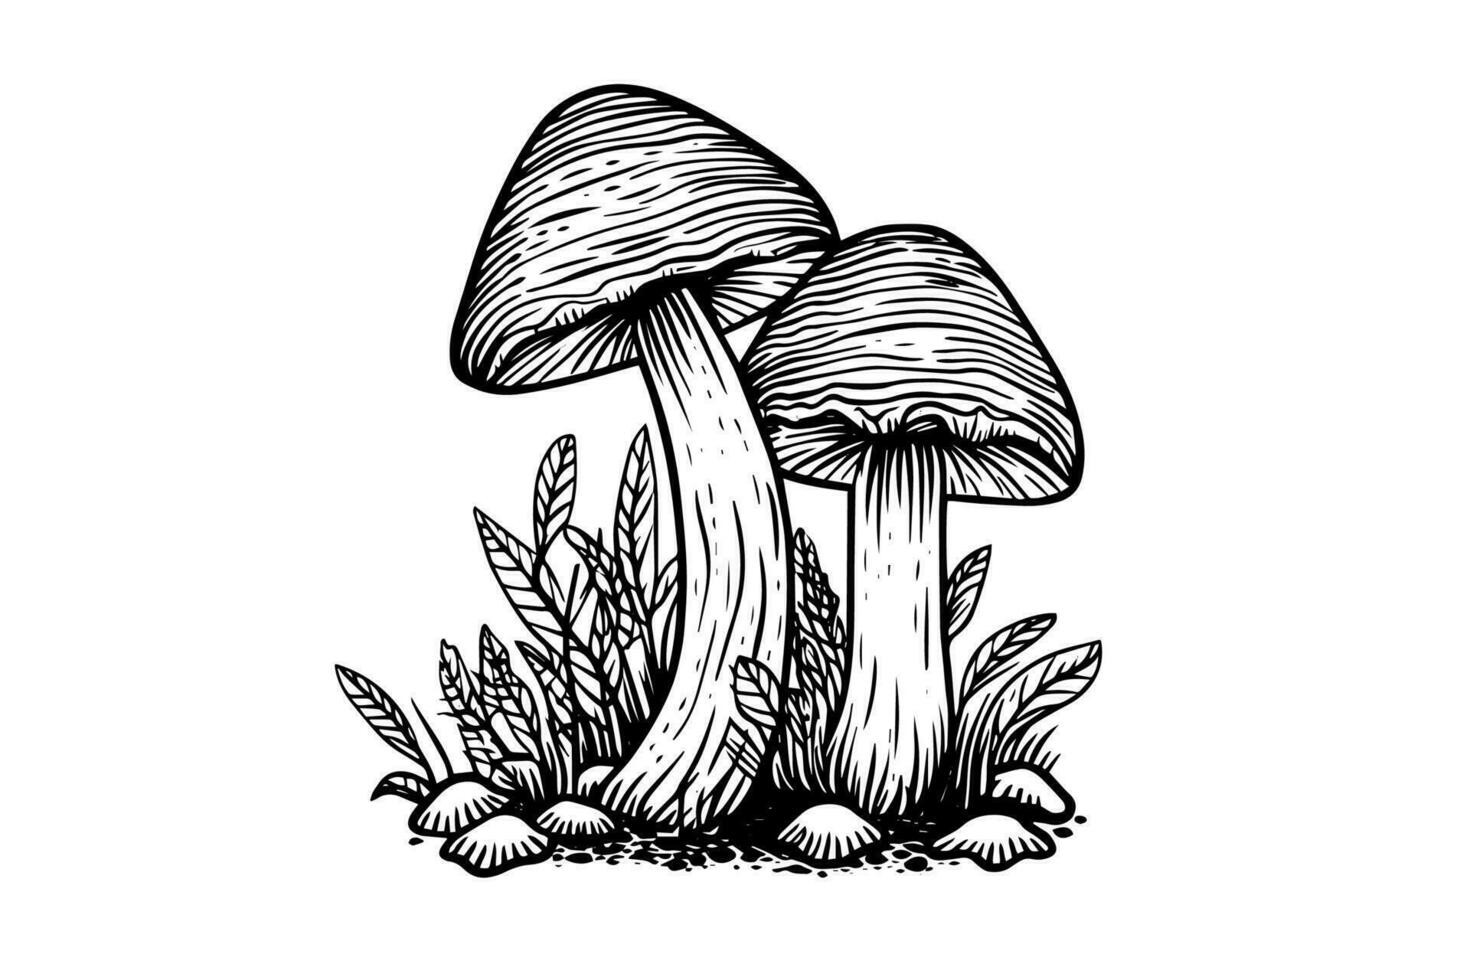 mouche agaric ou amanite champignons groupe croissance dans herbe gravure style. vecteur illustration.